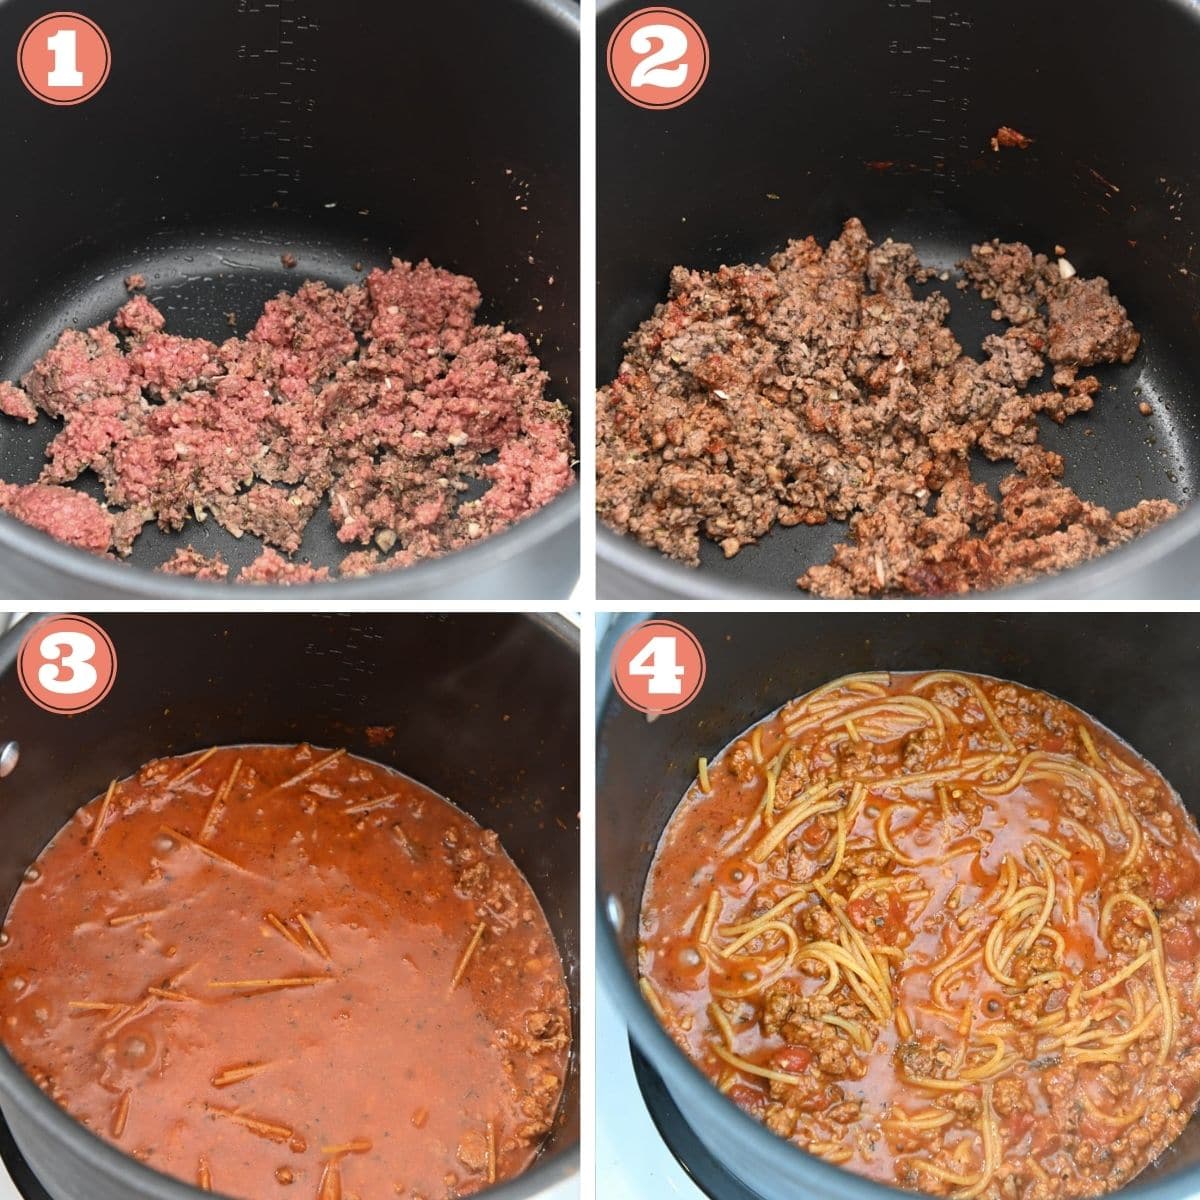 Steps 1 through 4 to make spaghetti.